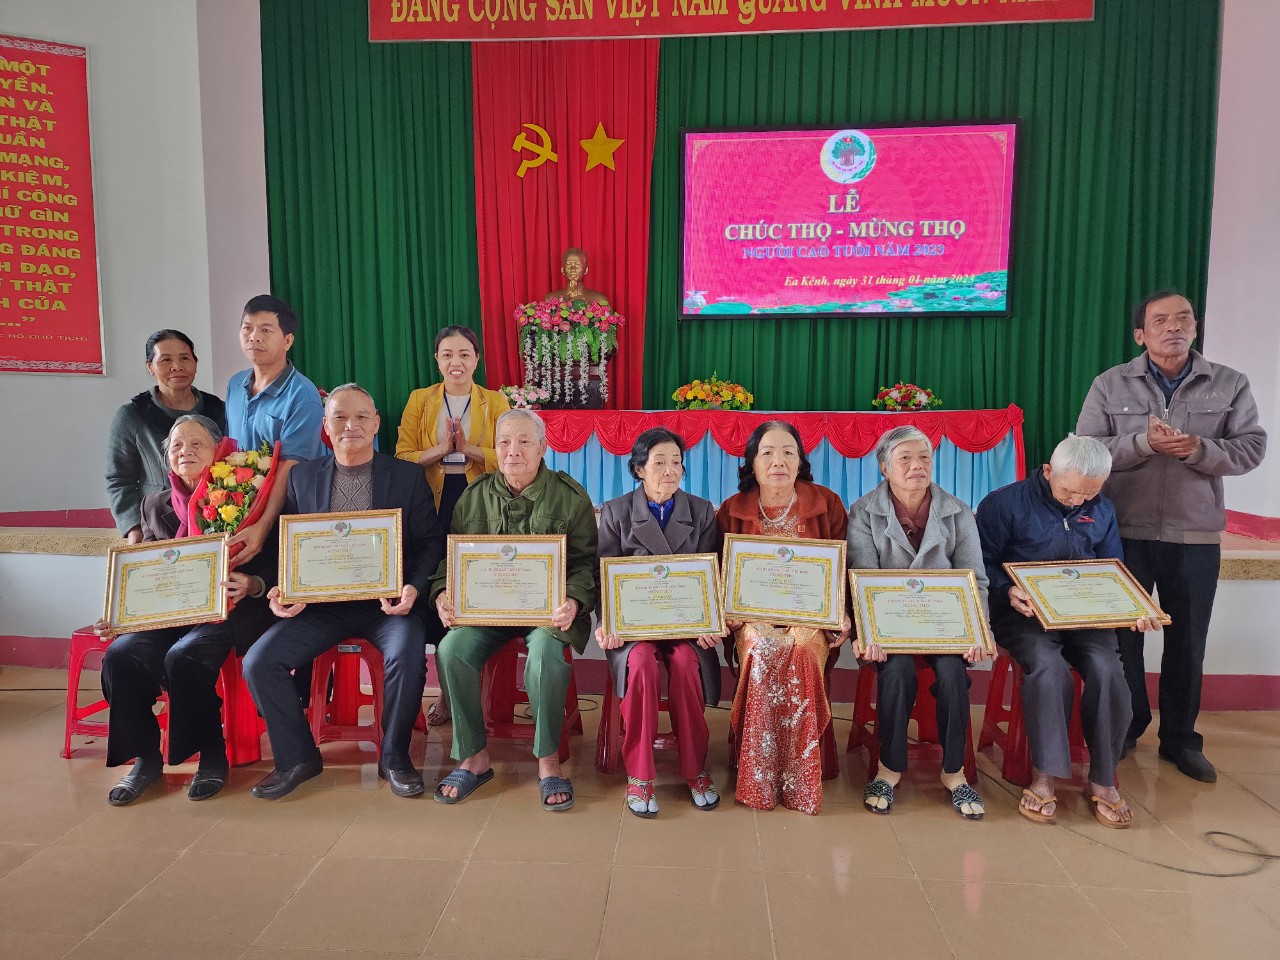 	UBND xã Ea Kênh tổ chức Lễ Chúc thọ, mừng thọ người cao tuổi năm 2023